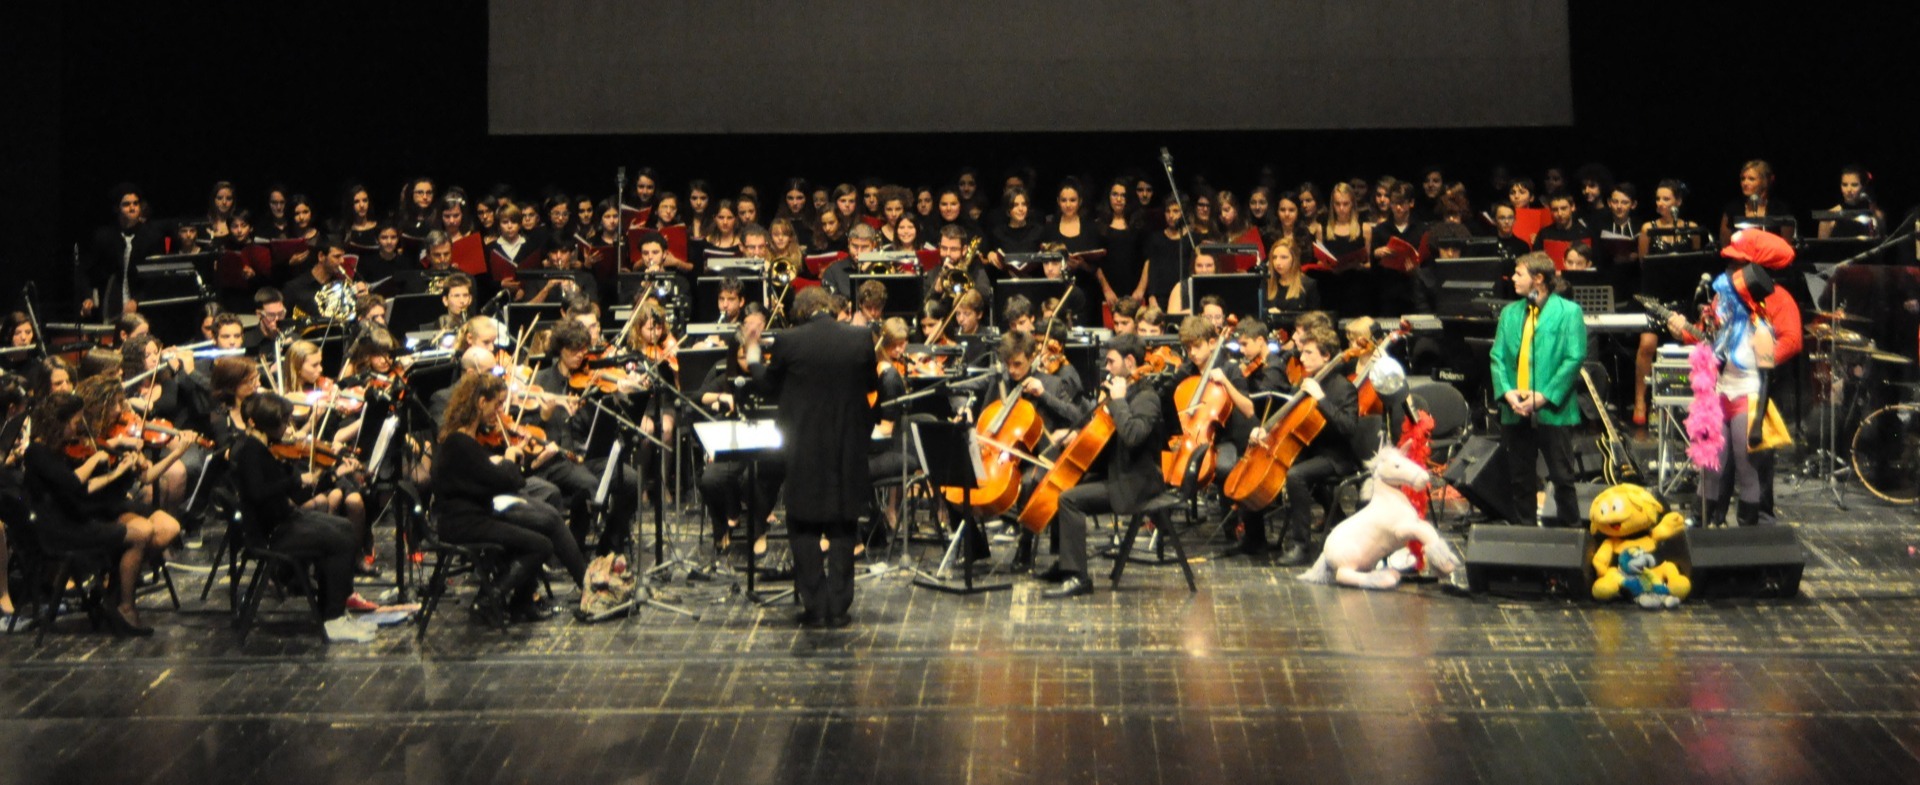 L'Orchestra Giovanile Vicentina in concerto al Teatro Comunale di Vicenza nello spettacolo "Colonne Sonore e Cartoni Animati"